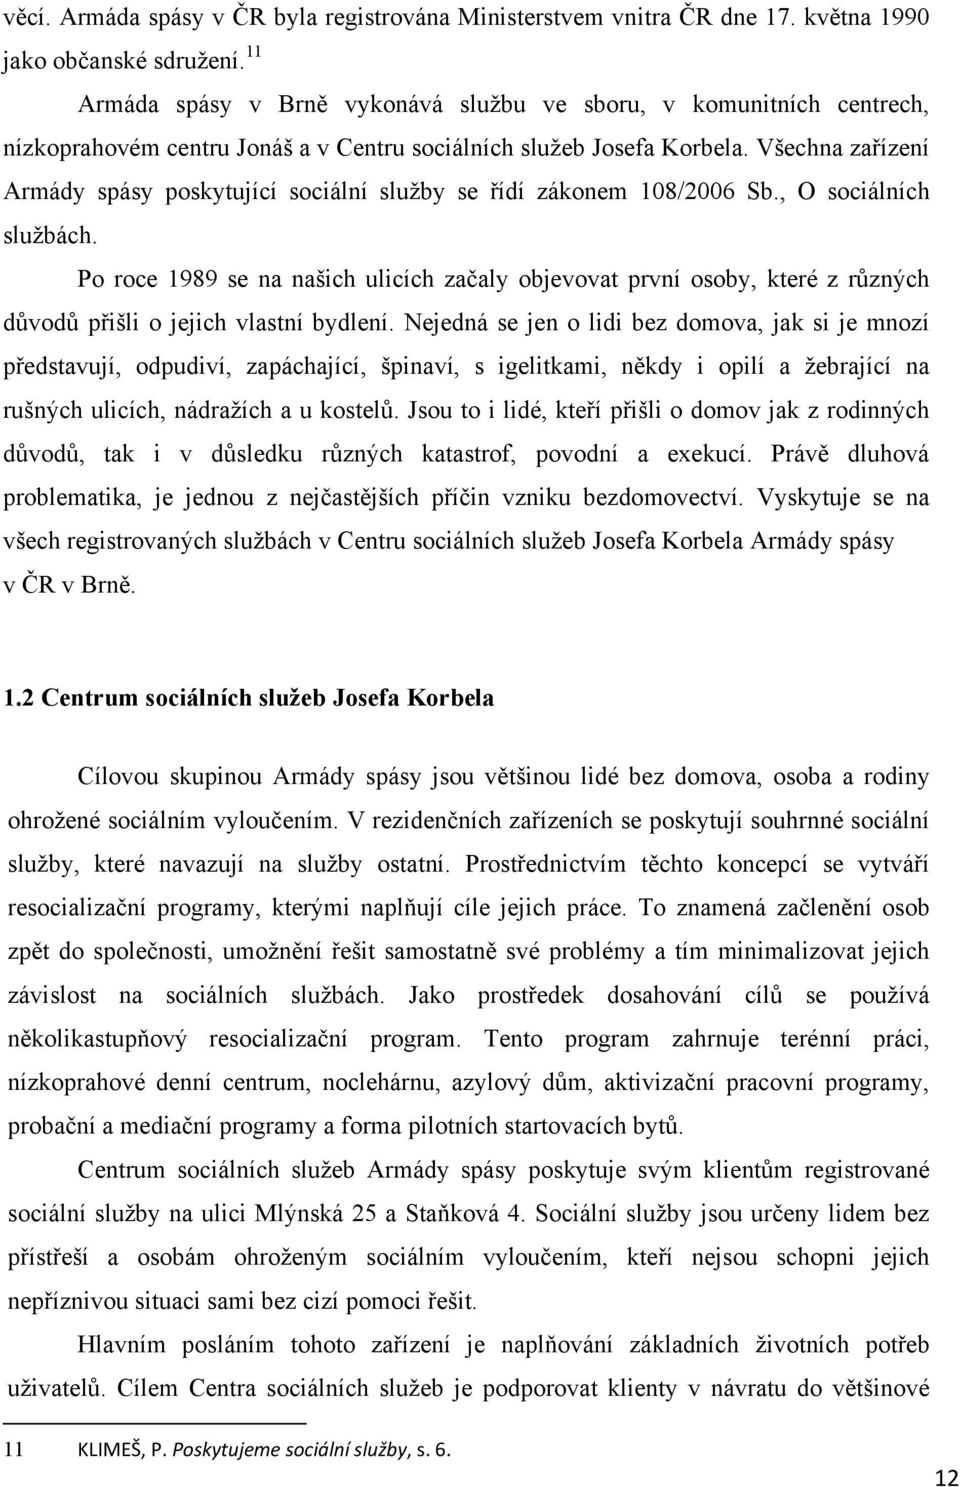 Všechna zařízení Armády spásy poskytující sociální sluţby se řídí zákonem 108/2006 Sb., O sociálních sluţbách.